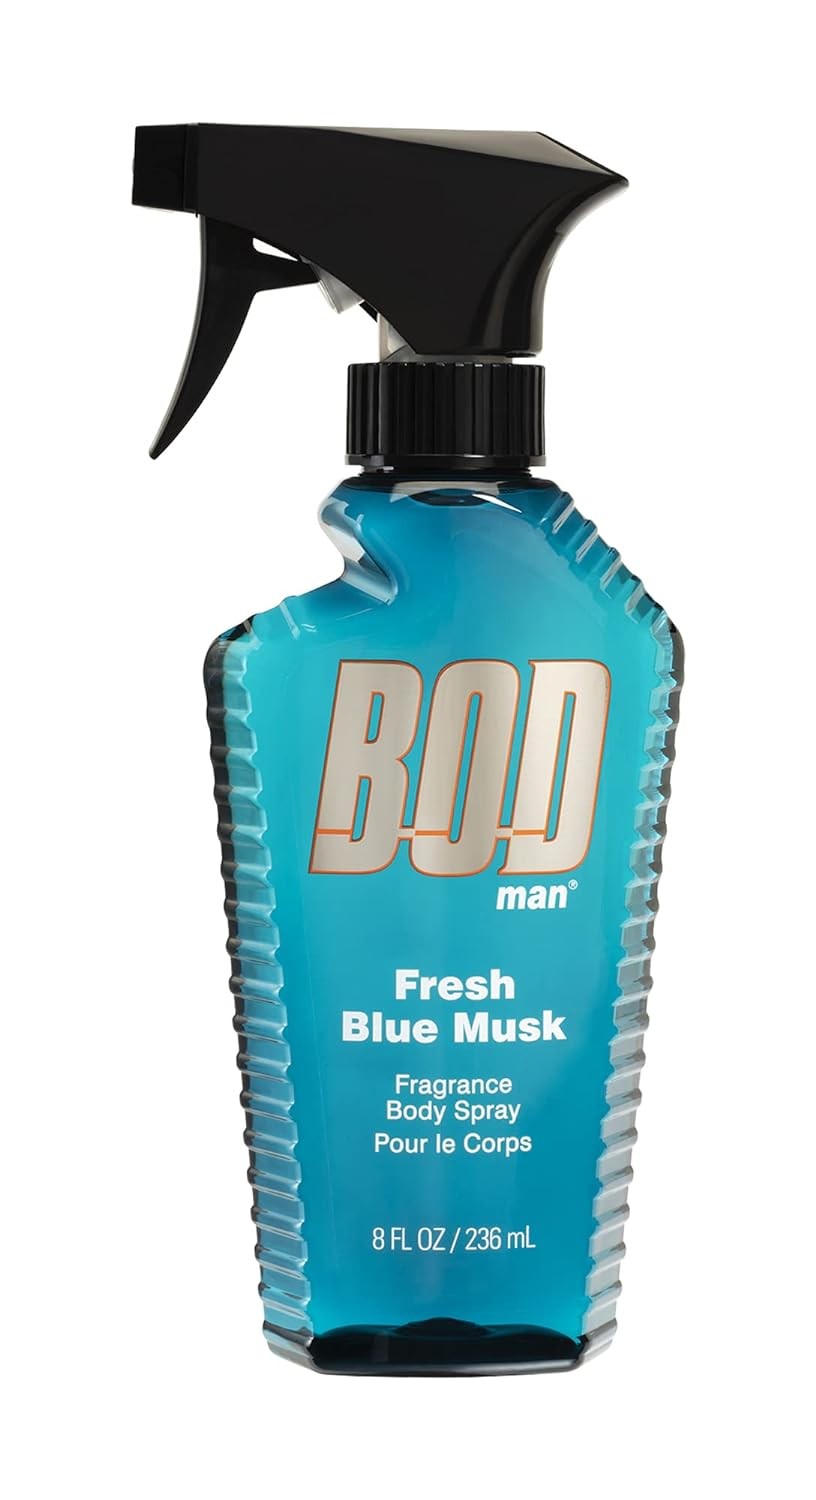 BOD Man Fresh Blue Musk Body Spray, 8 fl oz